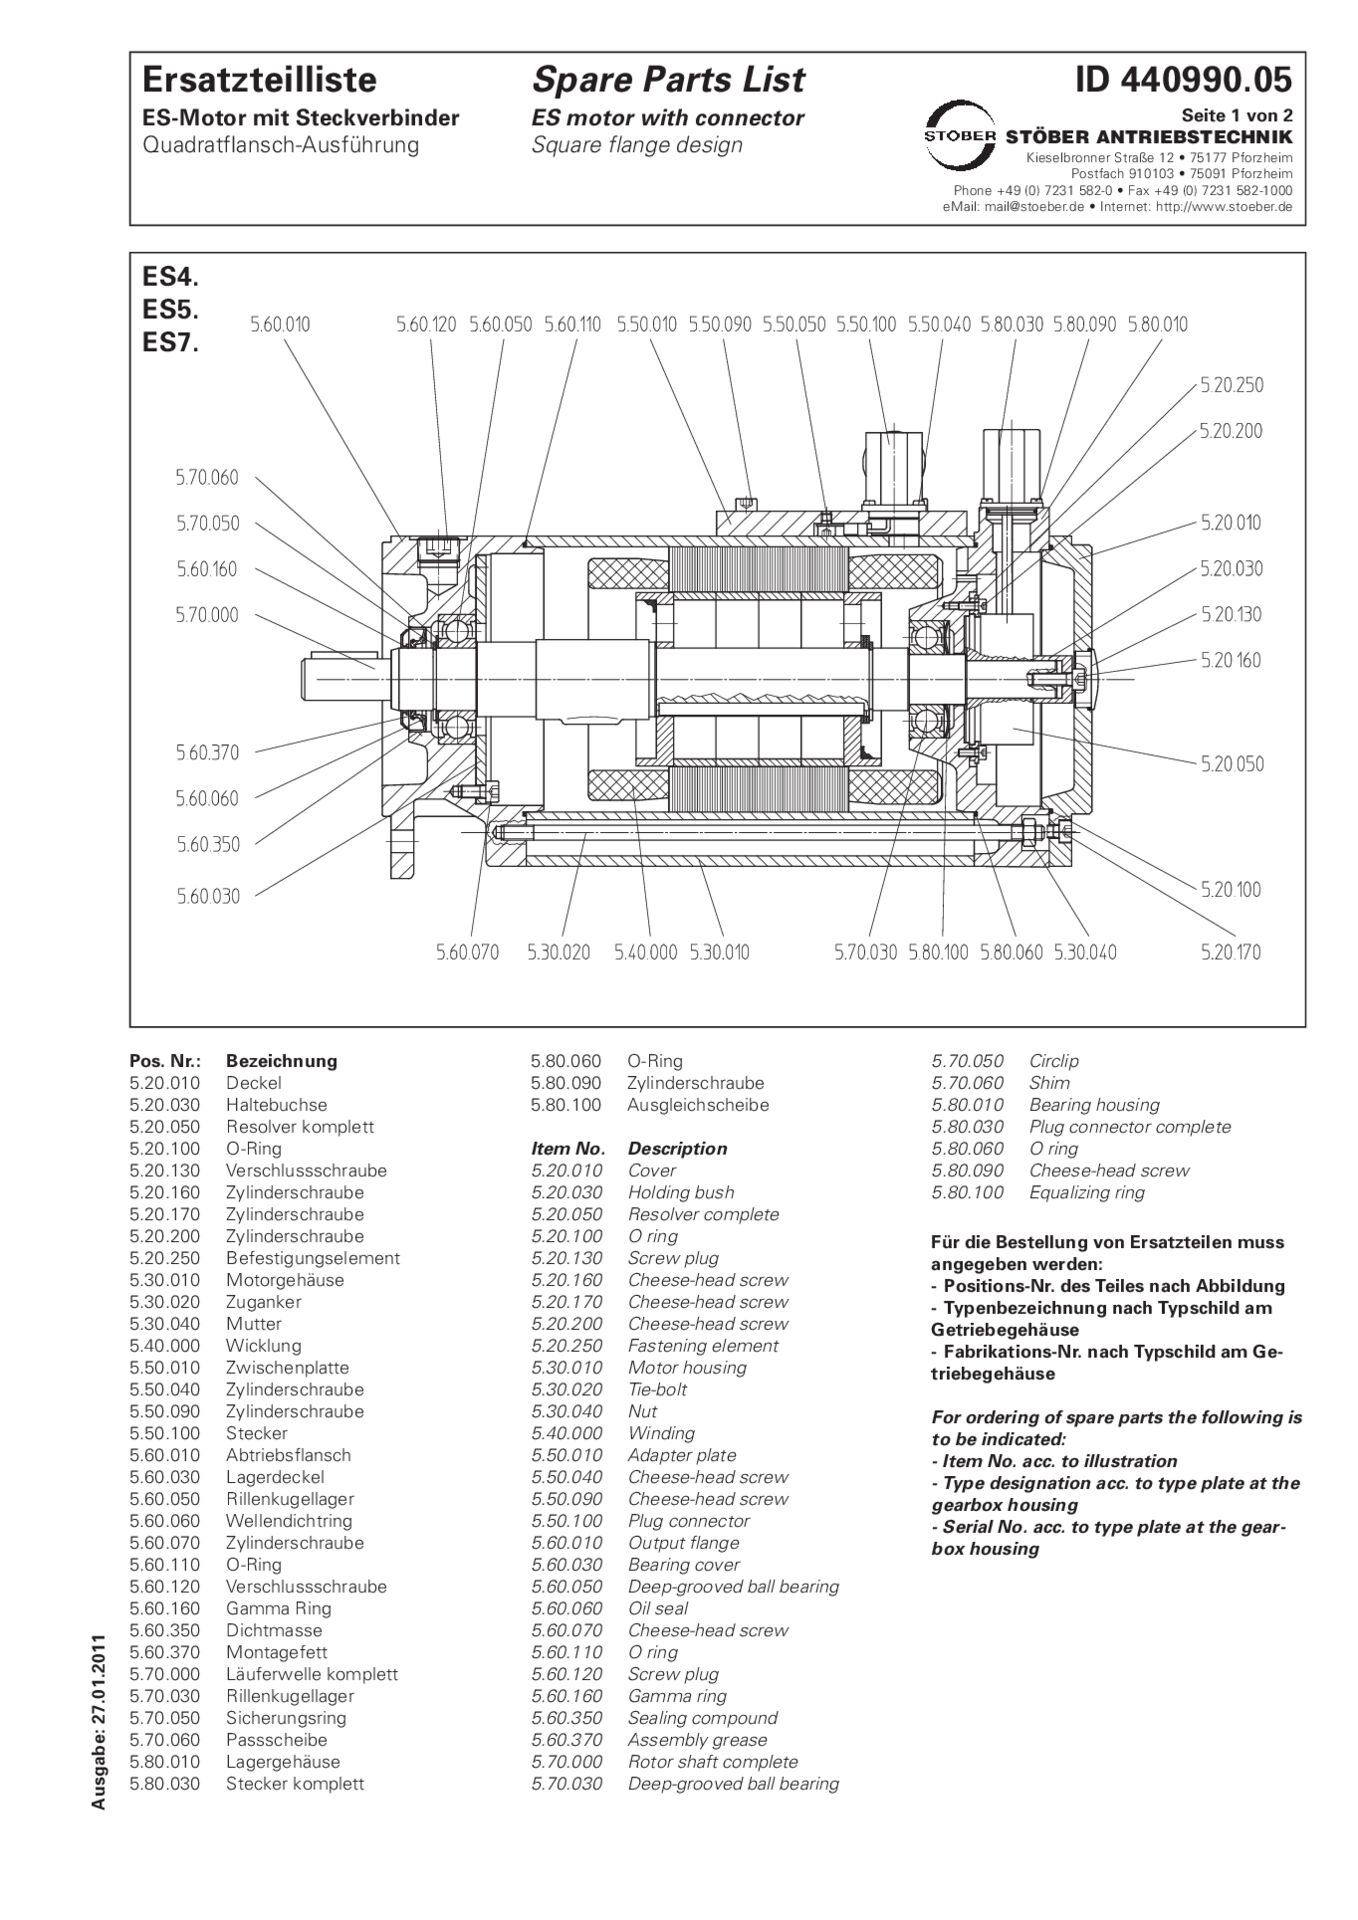 Spare parts list ES4_ES5_ES7 with connector flange design